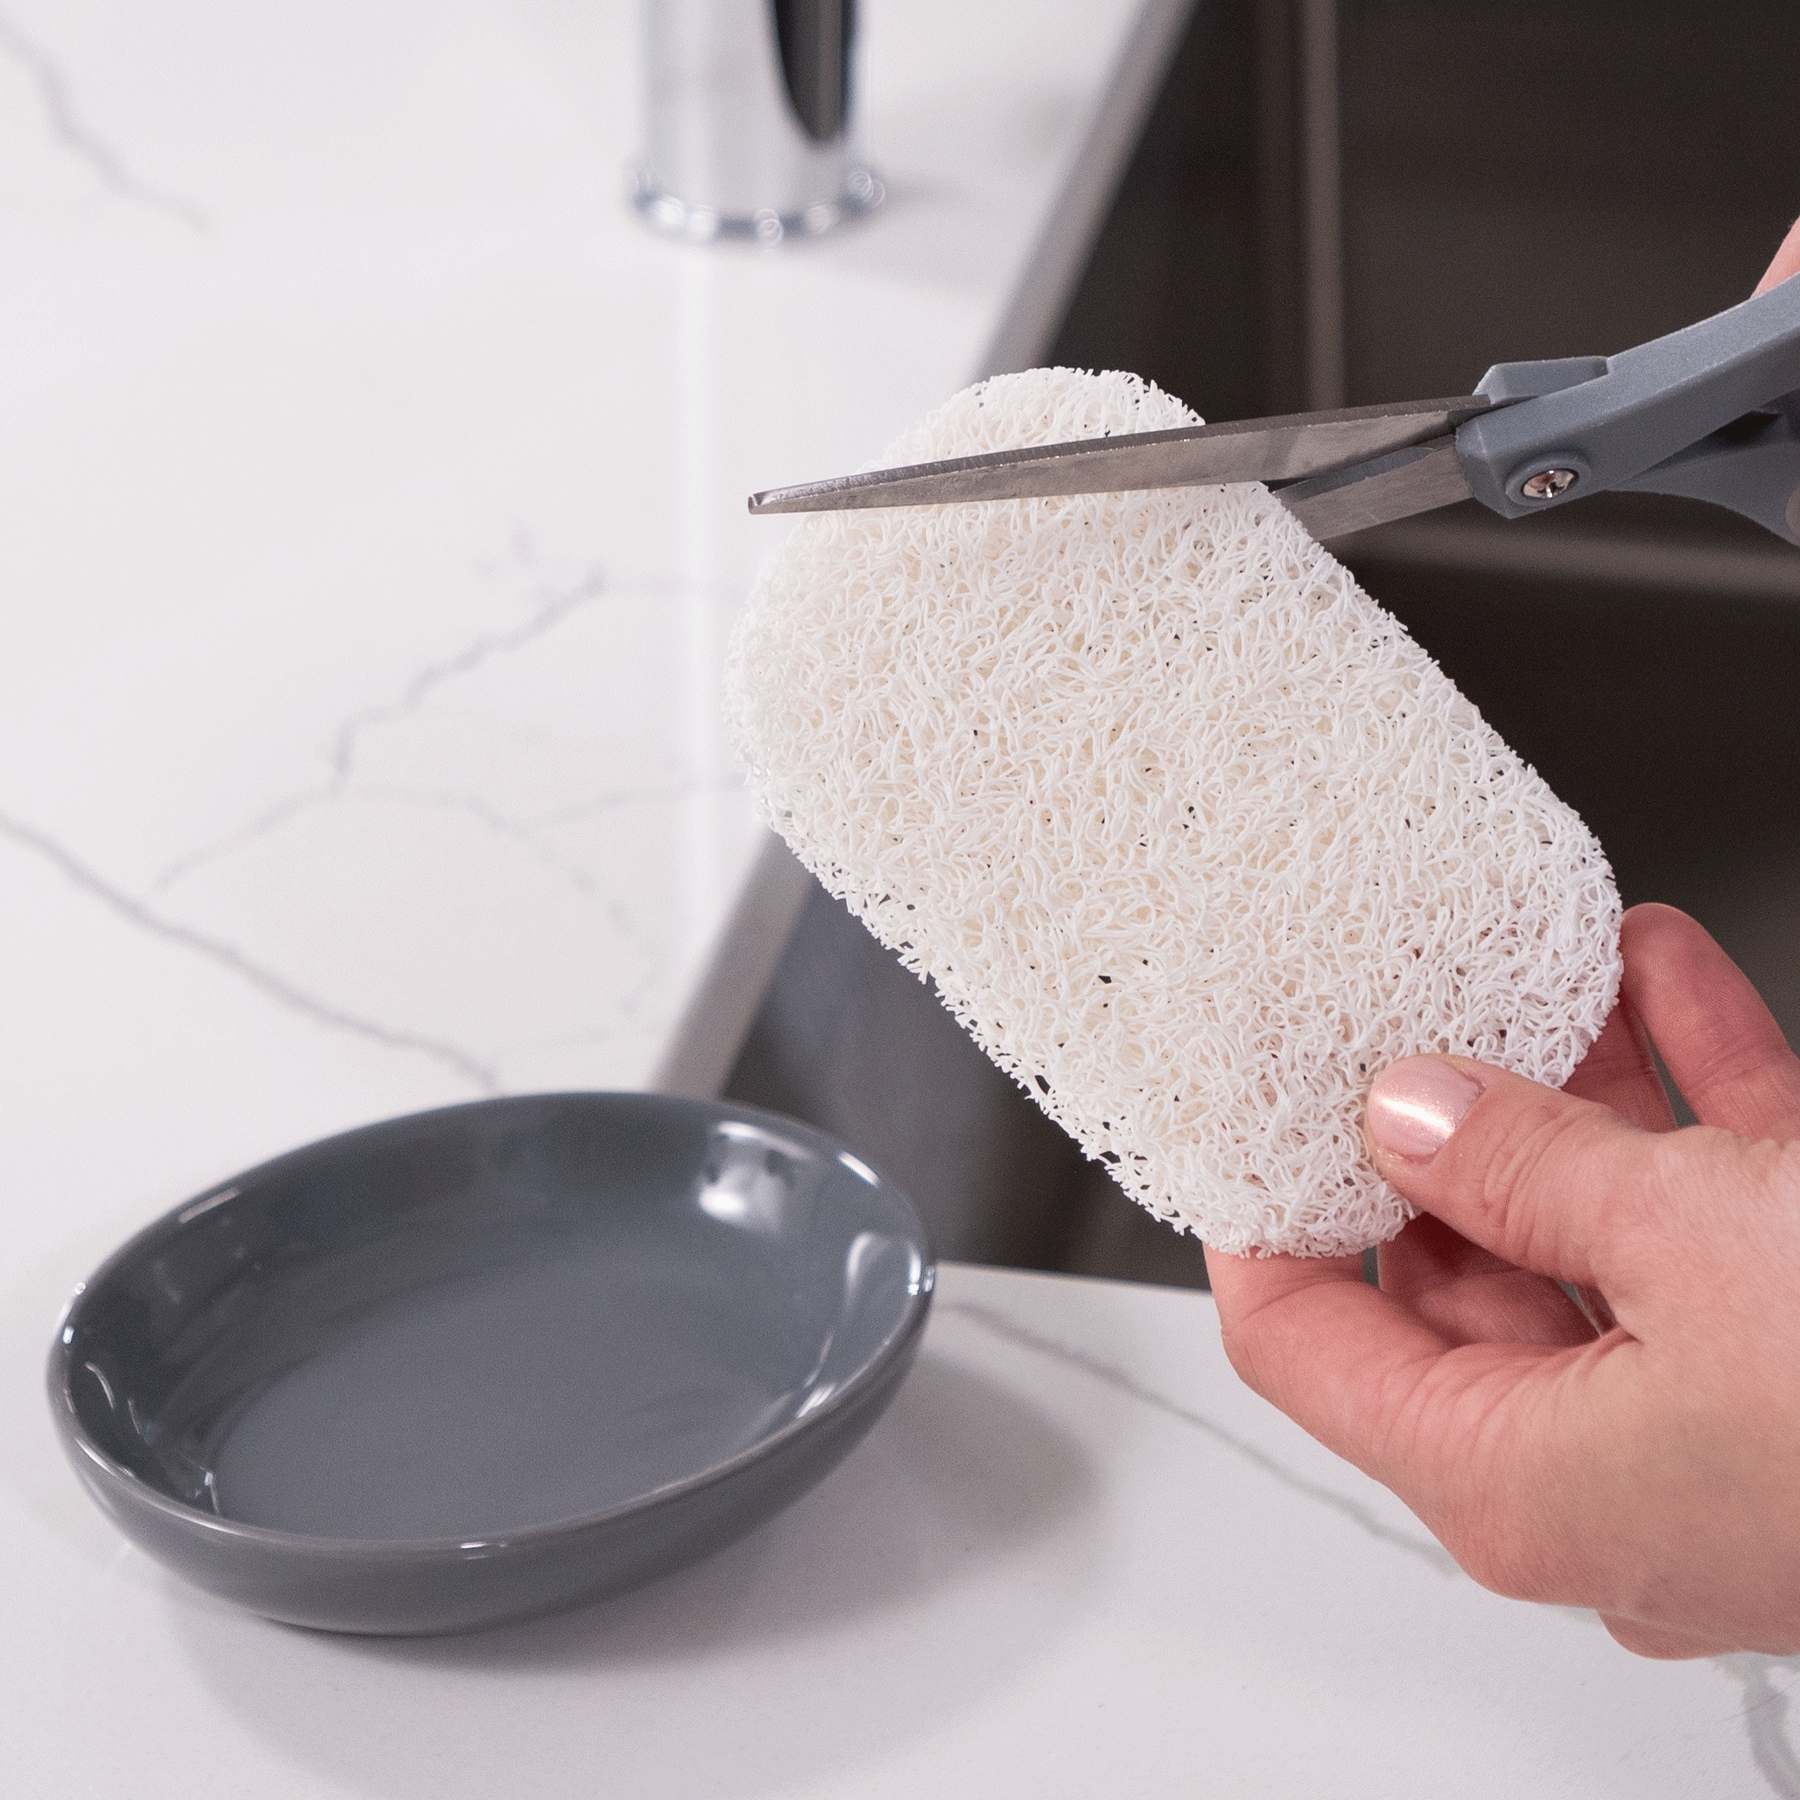 3 Pc Soap Dispenser with Sponge & Brush - White